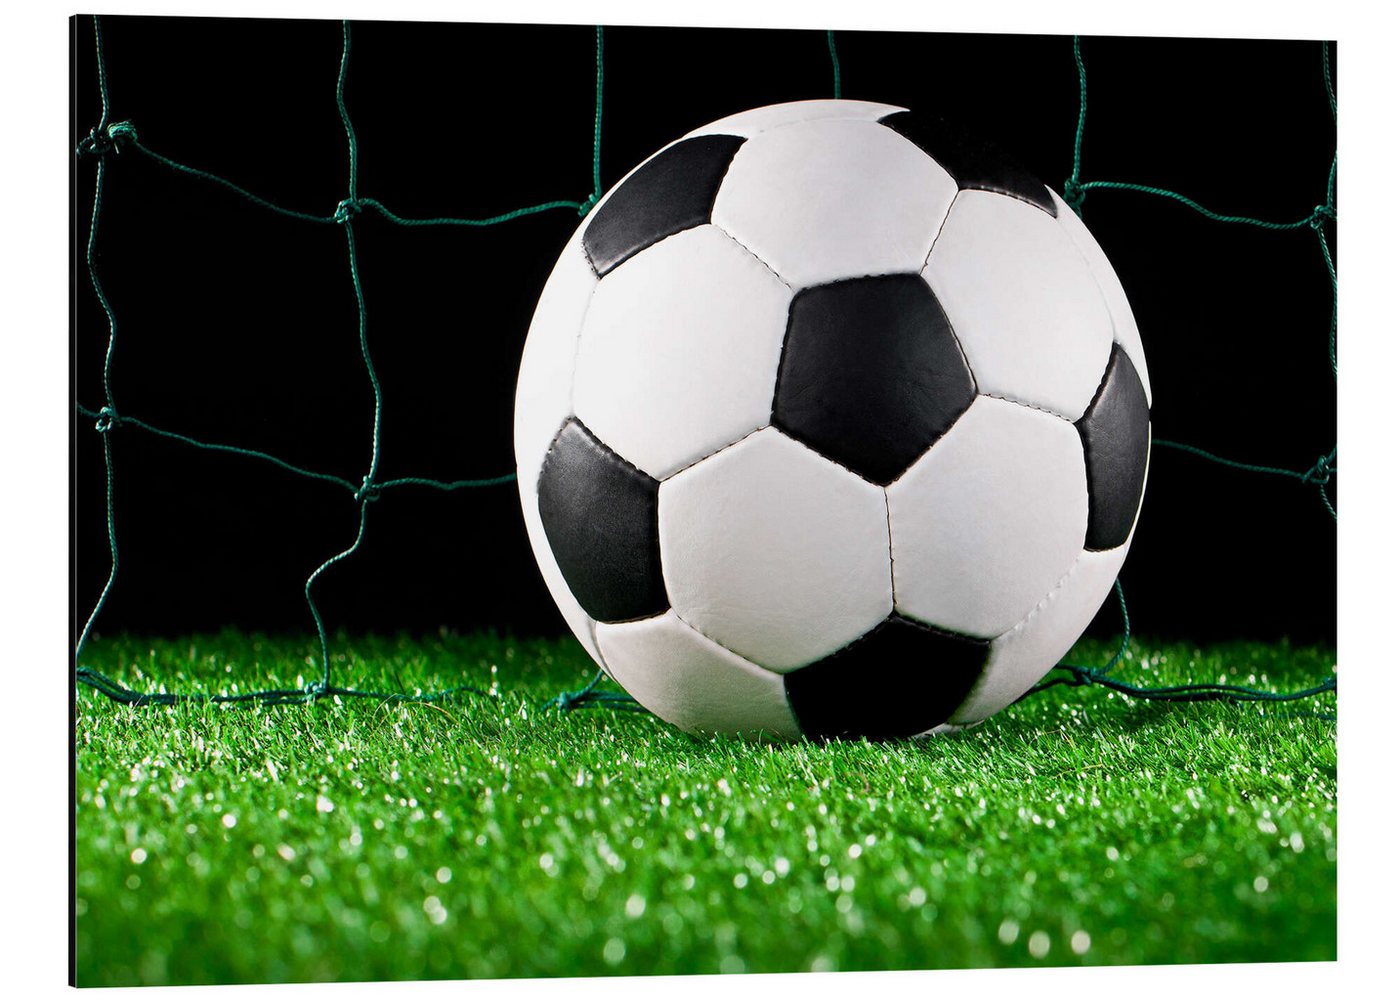 Posterlounge Alu-Dibond-Druck Editors Choice, Fußball im Tor, Fotografie von Posterlounge